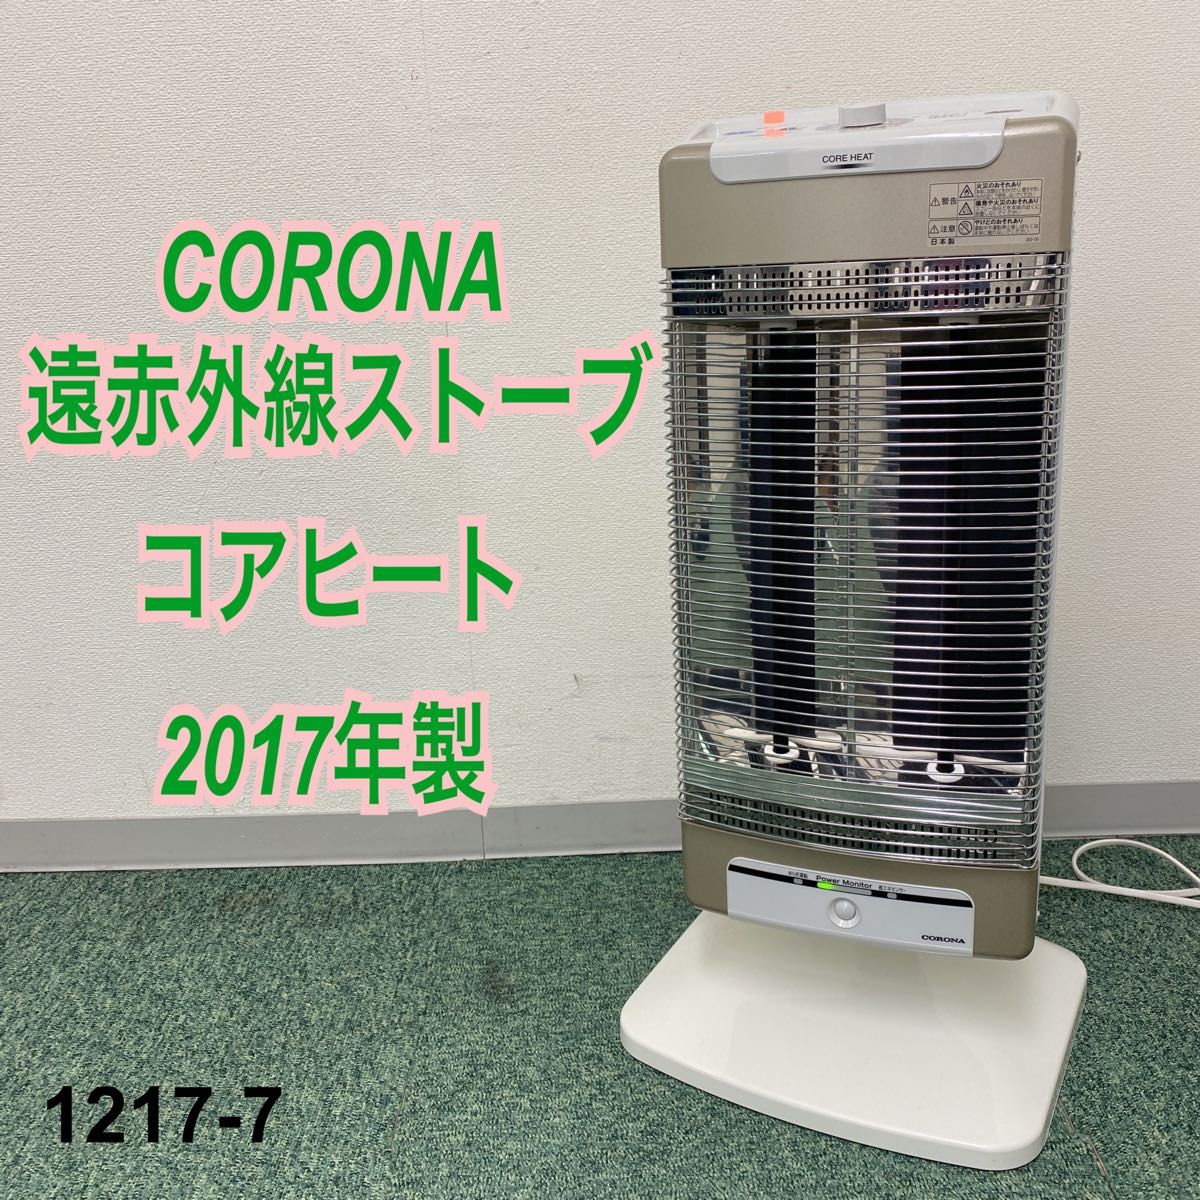 2021年新作入荷 CORONA コアヒート DH-1218R 2019年製 遠赤外線暖房機 